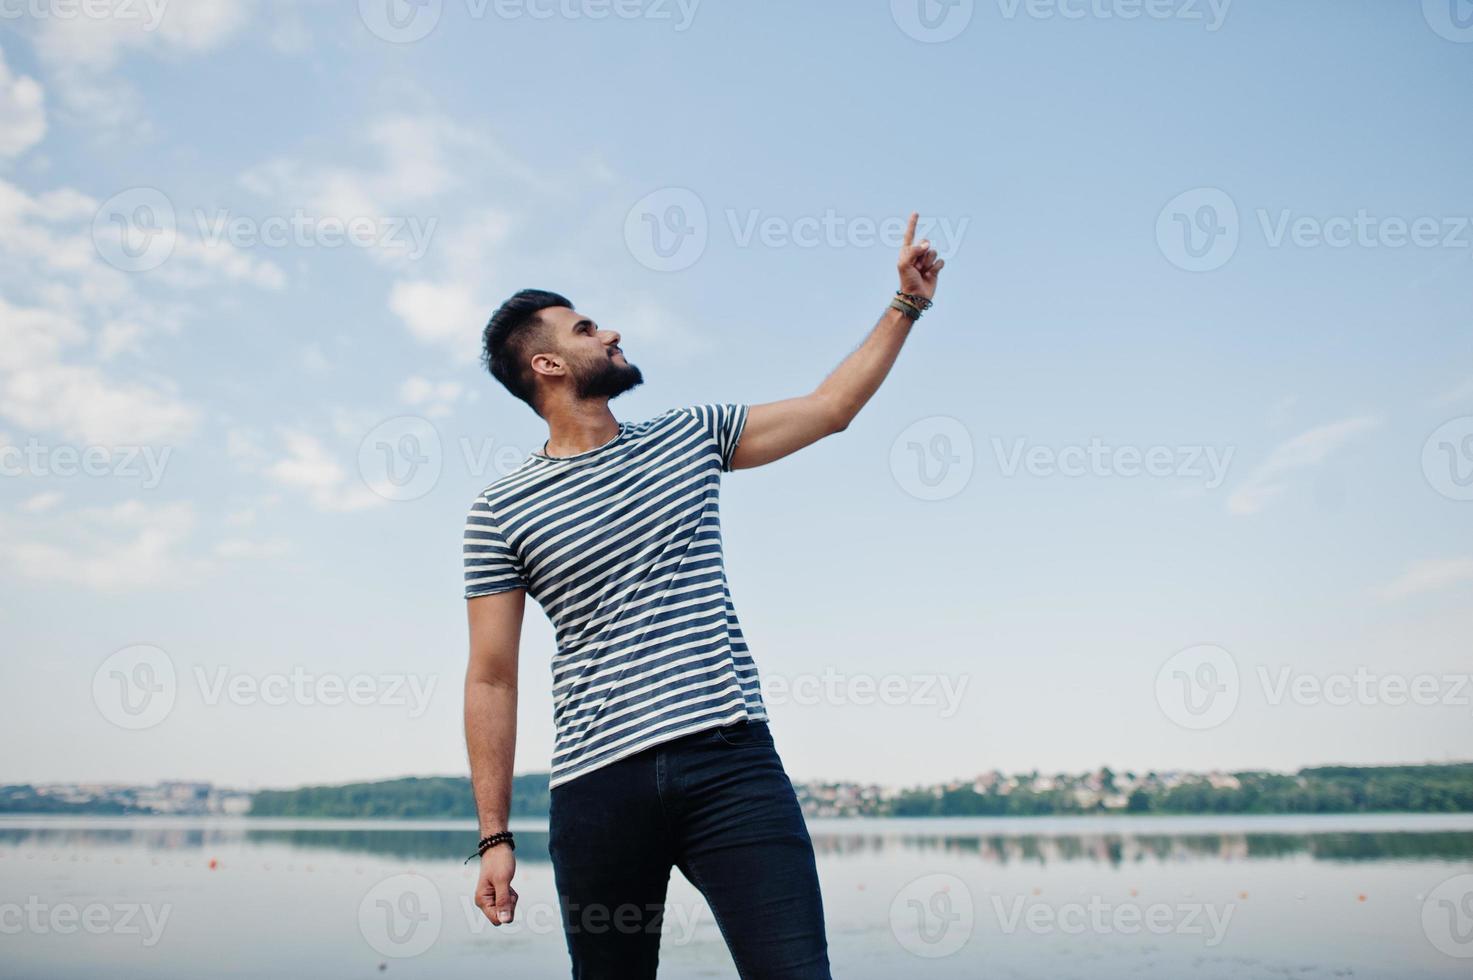 knappe lange arabische baard man model op gestript shirt poseerde buiten tegen meer en vinger in de lucht tonen. modieuze Arabische man. foto